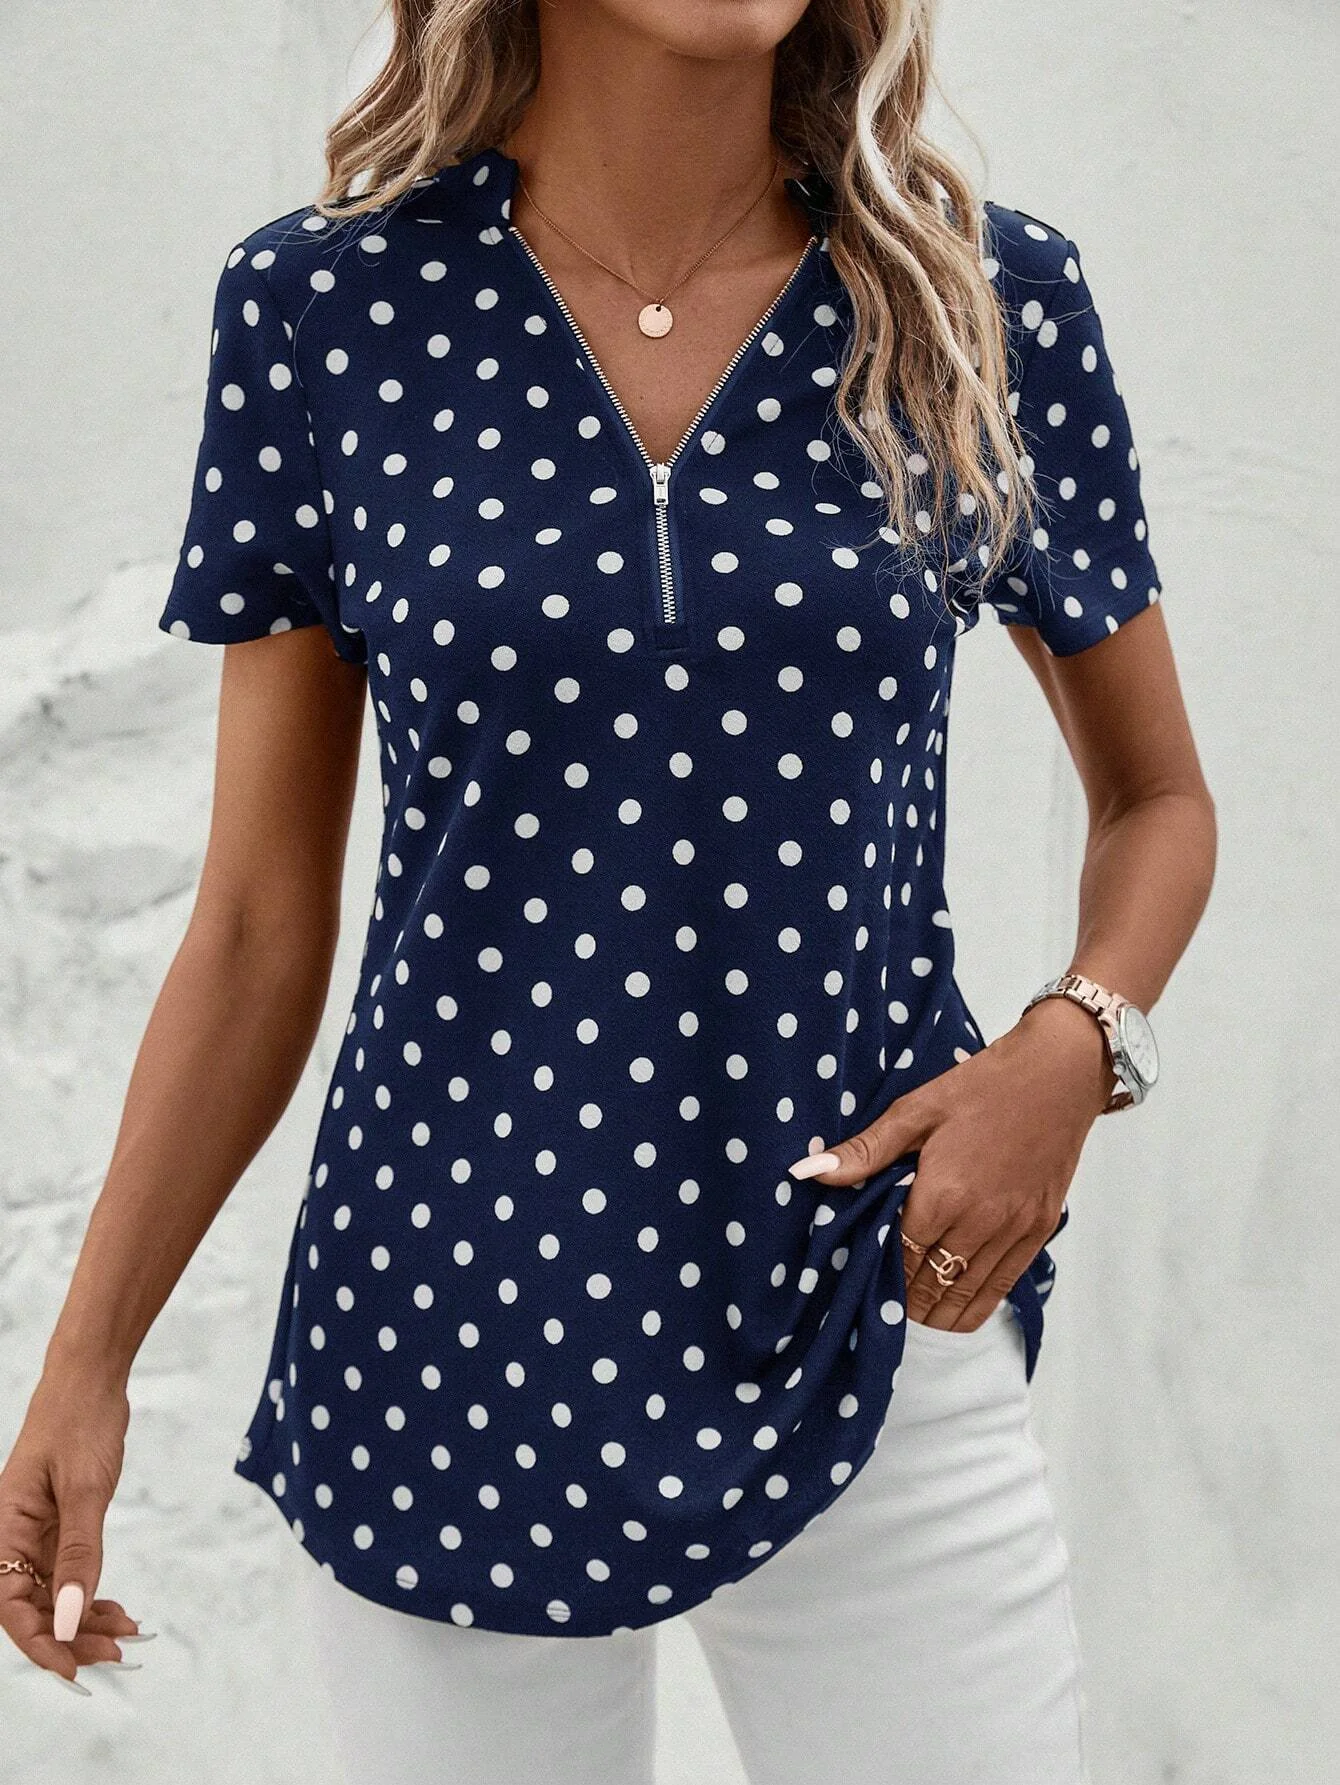 Women's Short Sleeve Shirt Summer Dark Blue Polka Dots Zipper V Neck Going Out Top